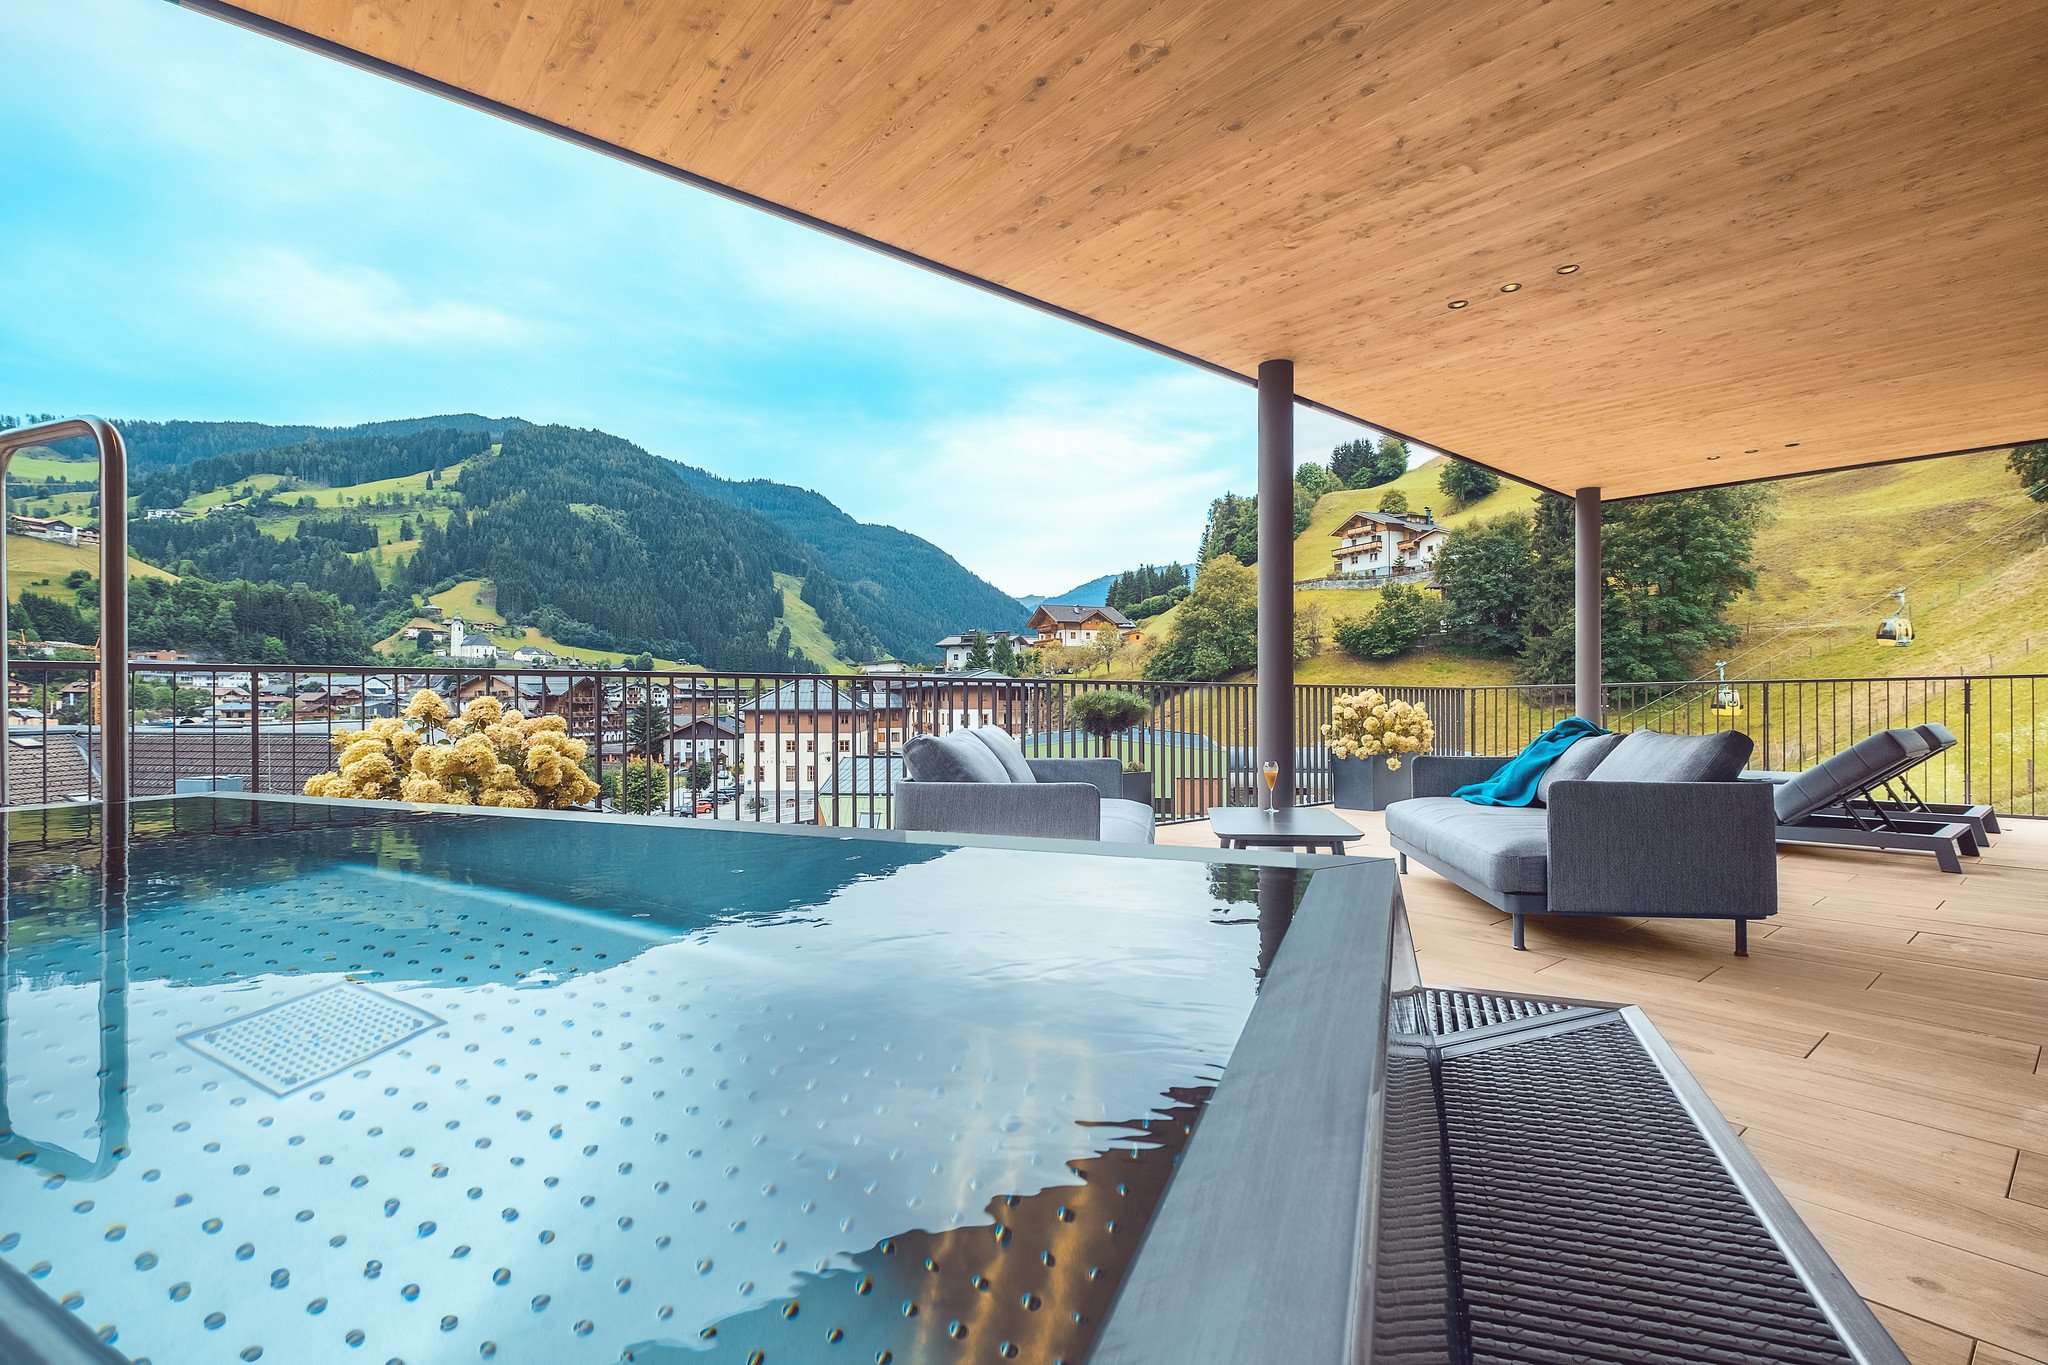 Das Edelweiss Salzburg Mountain Resort | Grossarl | Austria